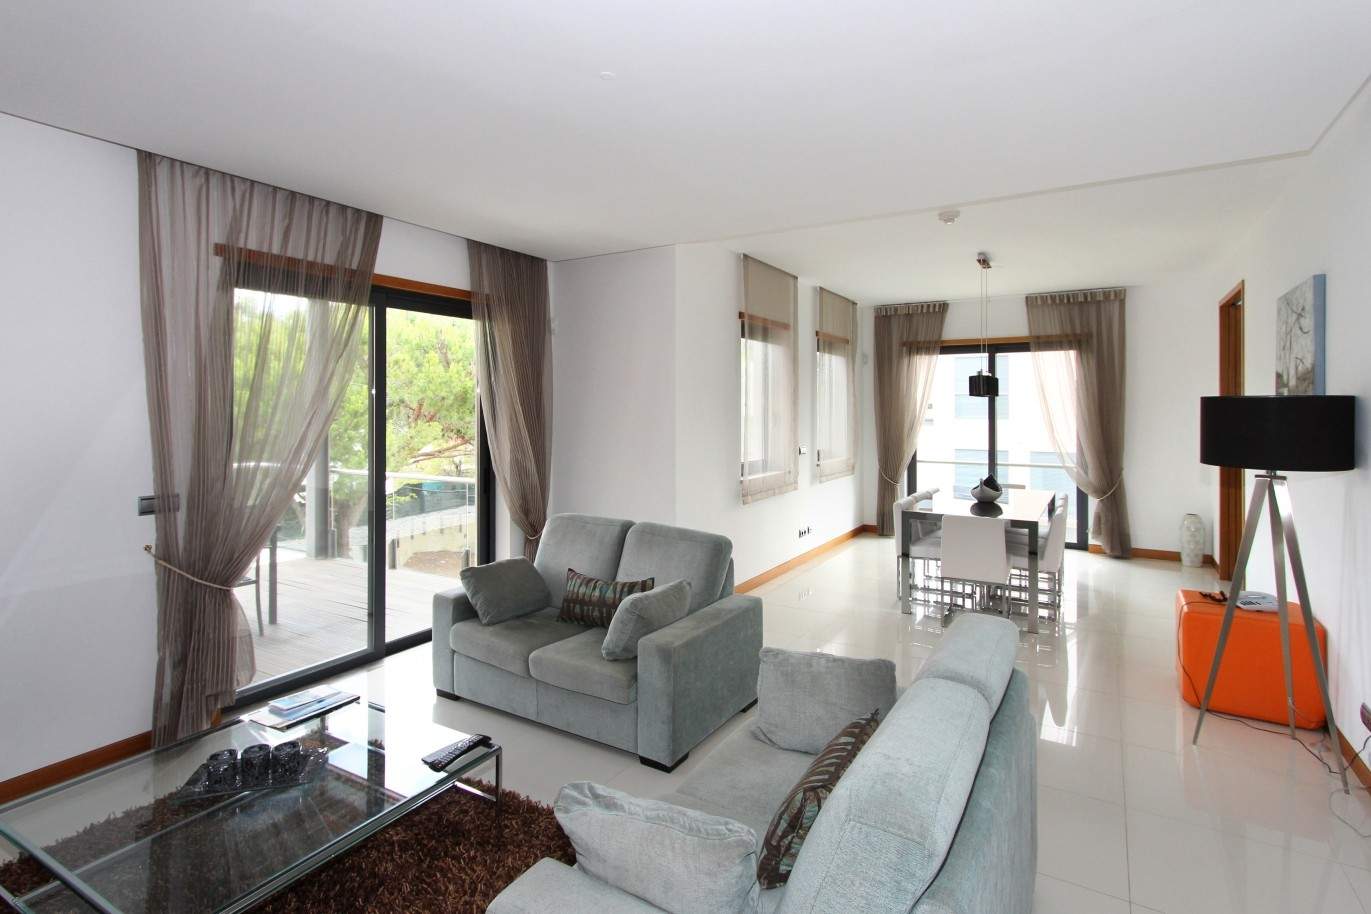 Venta de apartamento, terraza y jacúzi, Vale do Lobo, Algarve,Portugal_65348